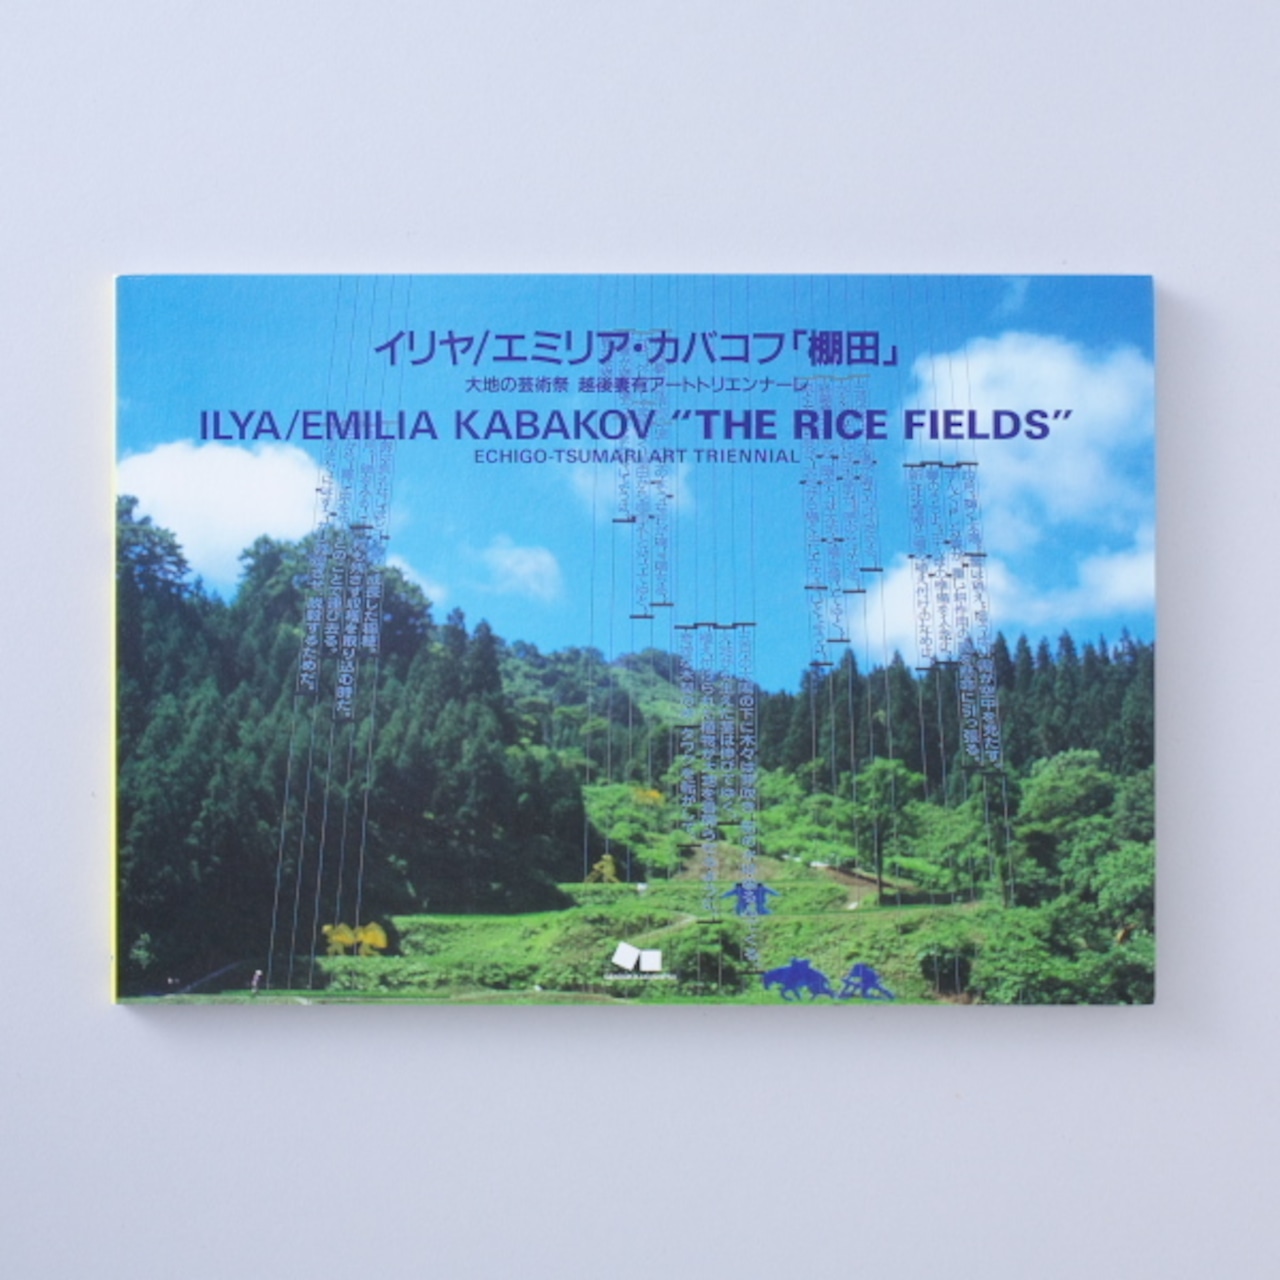 イリヤ/エミリア・カバコフ 「棚田」/ ILYA ,EMILIA KABAKOV " THE RICE FIELDS "